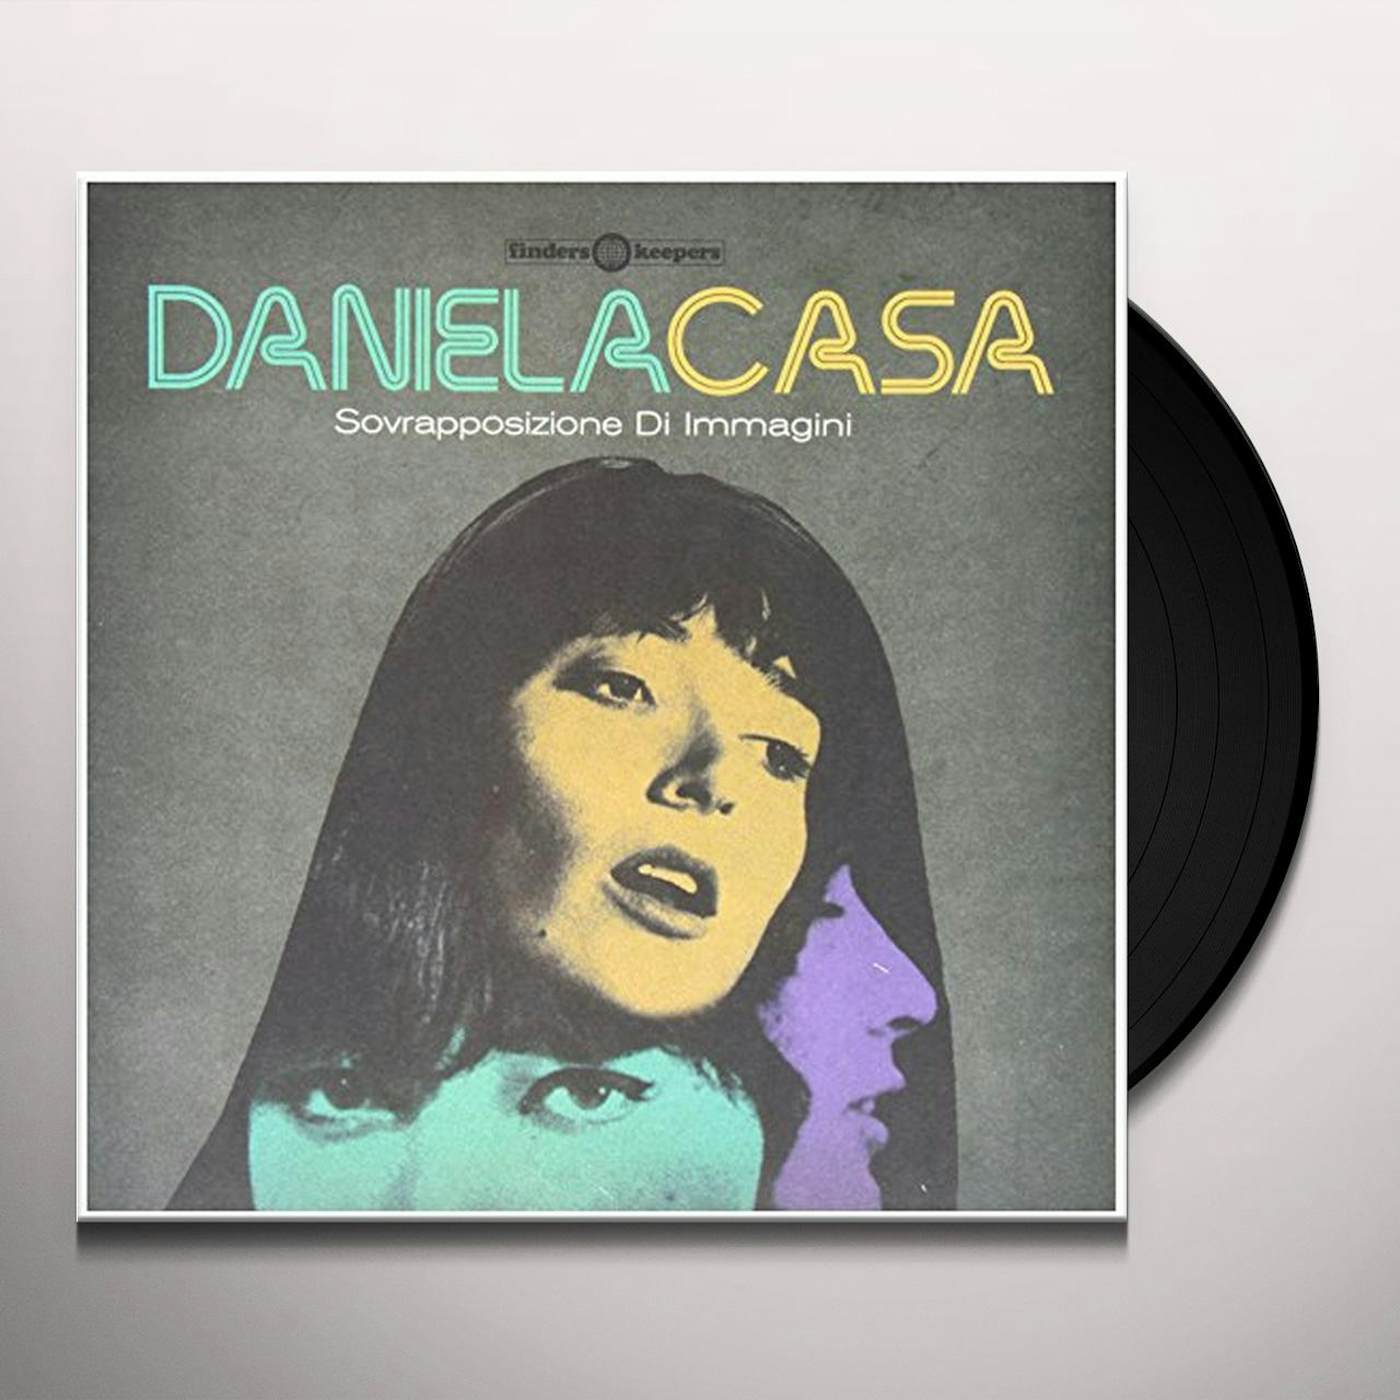 Daniela Casa Sovrapposizione Di Immagini Vinyl Record